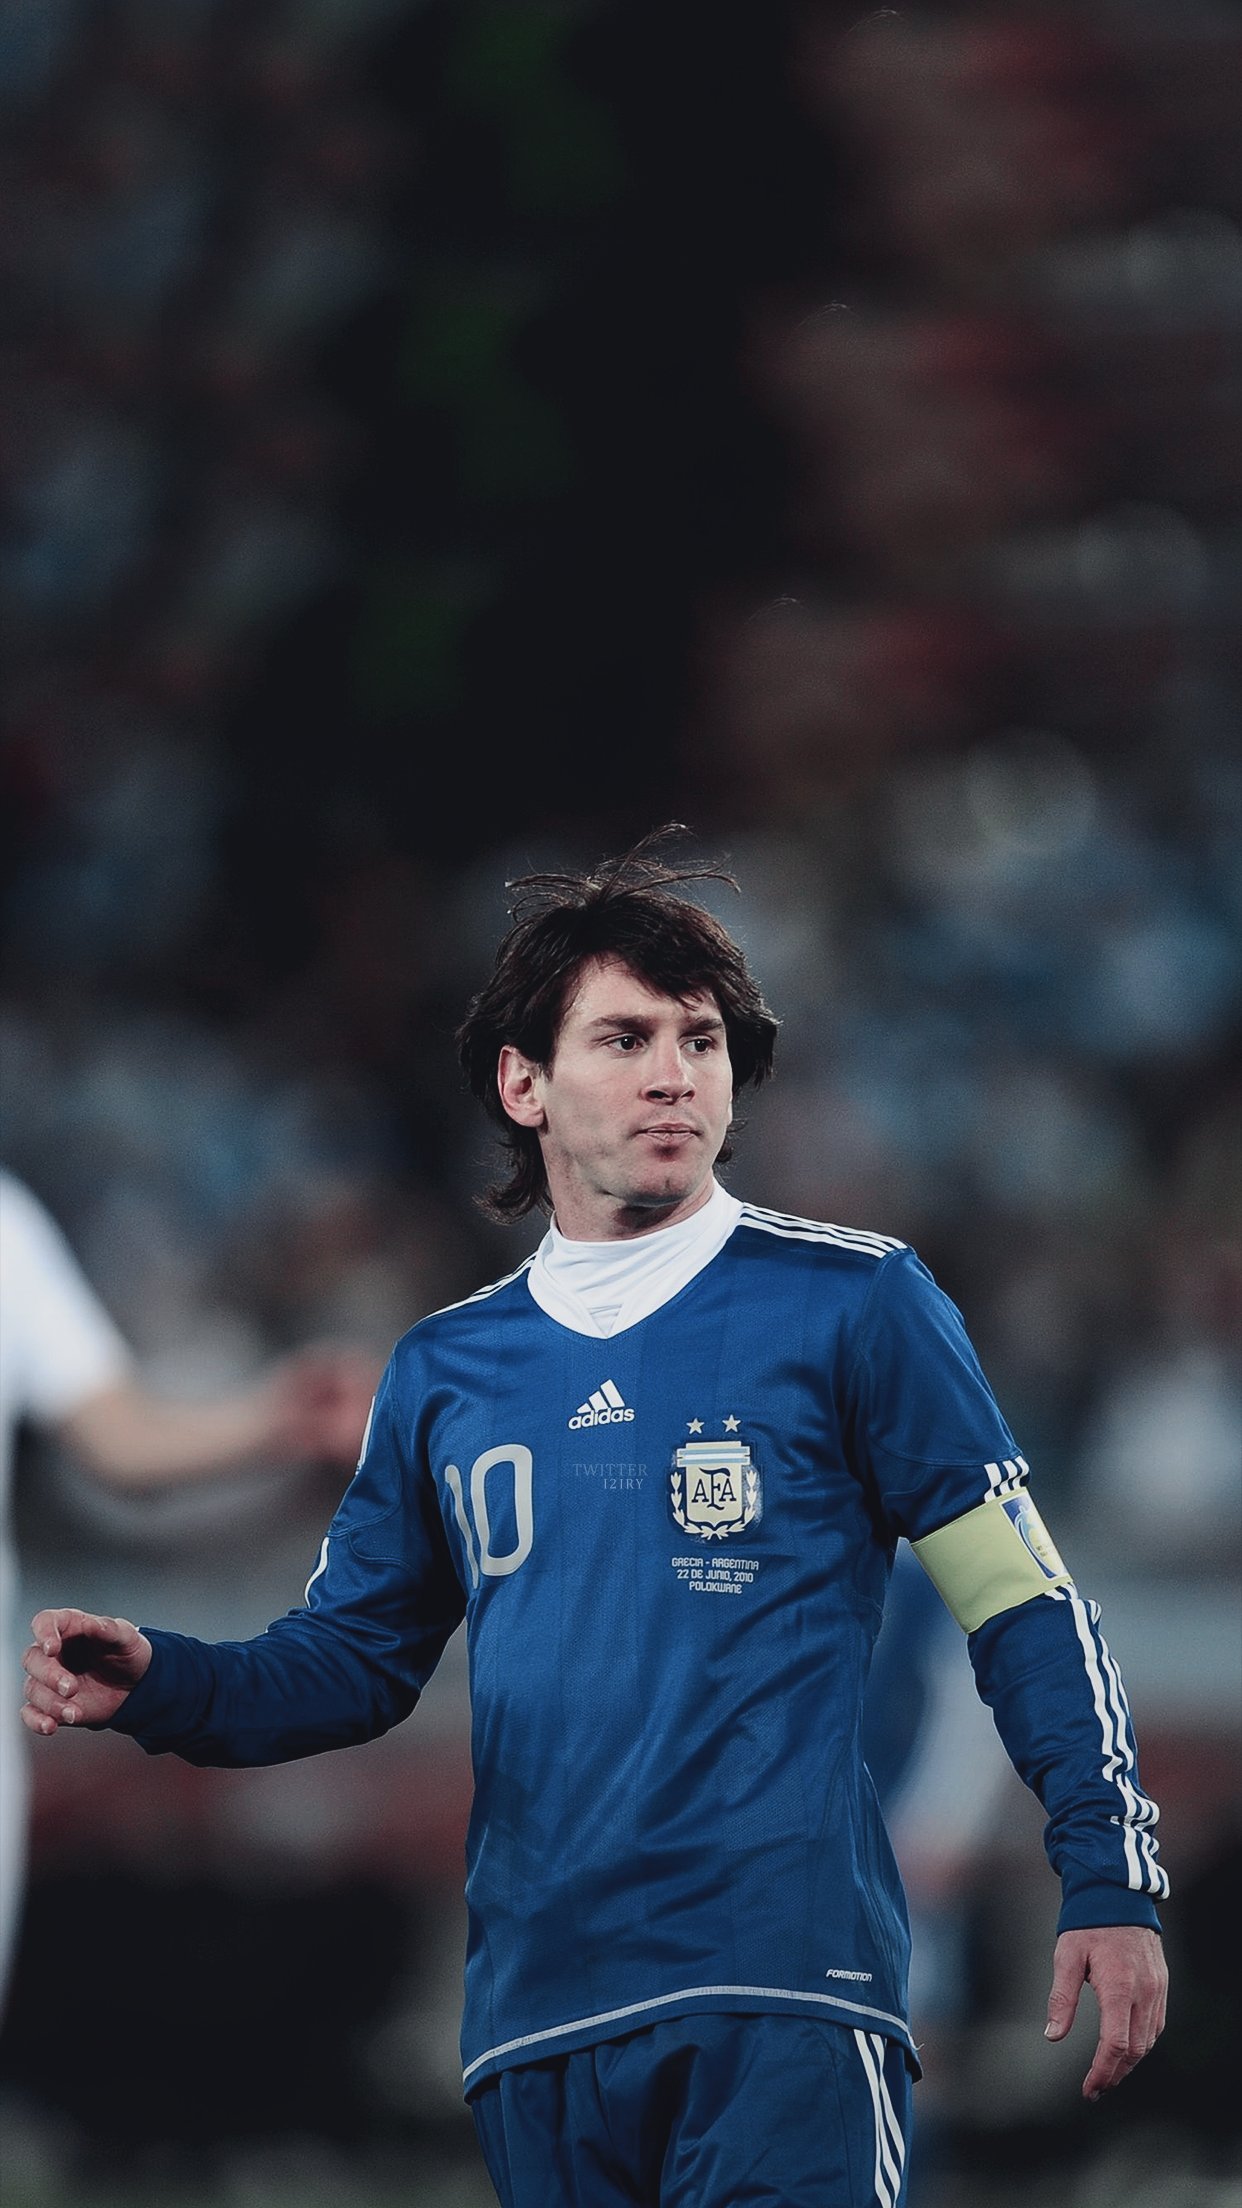 Mời bạn đến với bộ sưu tập hình nền Messi Wallpapers – nơi chứa đựng những tấm hình nền độc đáo về một trong những cầu thủ bóng đá xuất sắc nhất thế giới. Xem và cảm nhận về sự tài năng, sáng tạo của Lionel Messi qua những hình ảnh độc đáo.